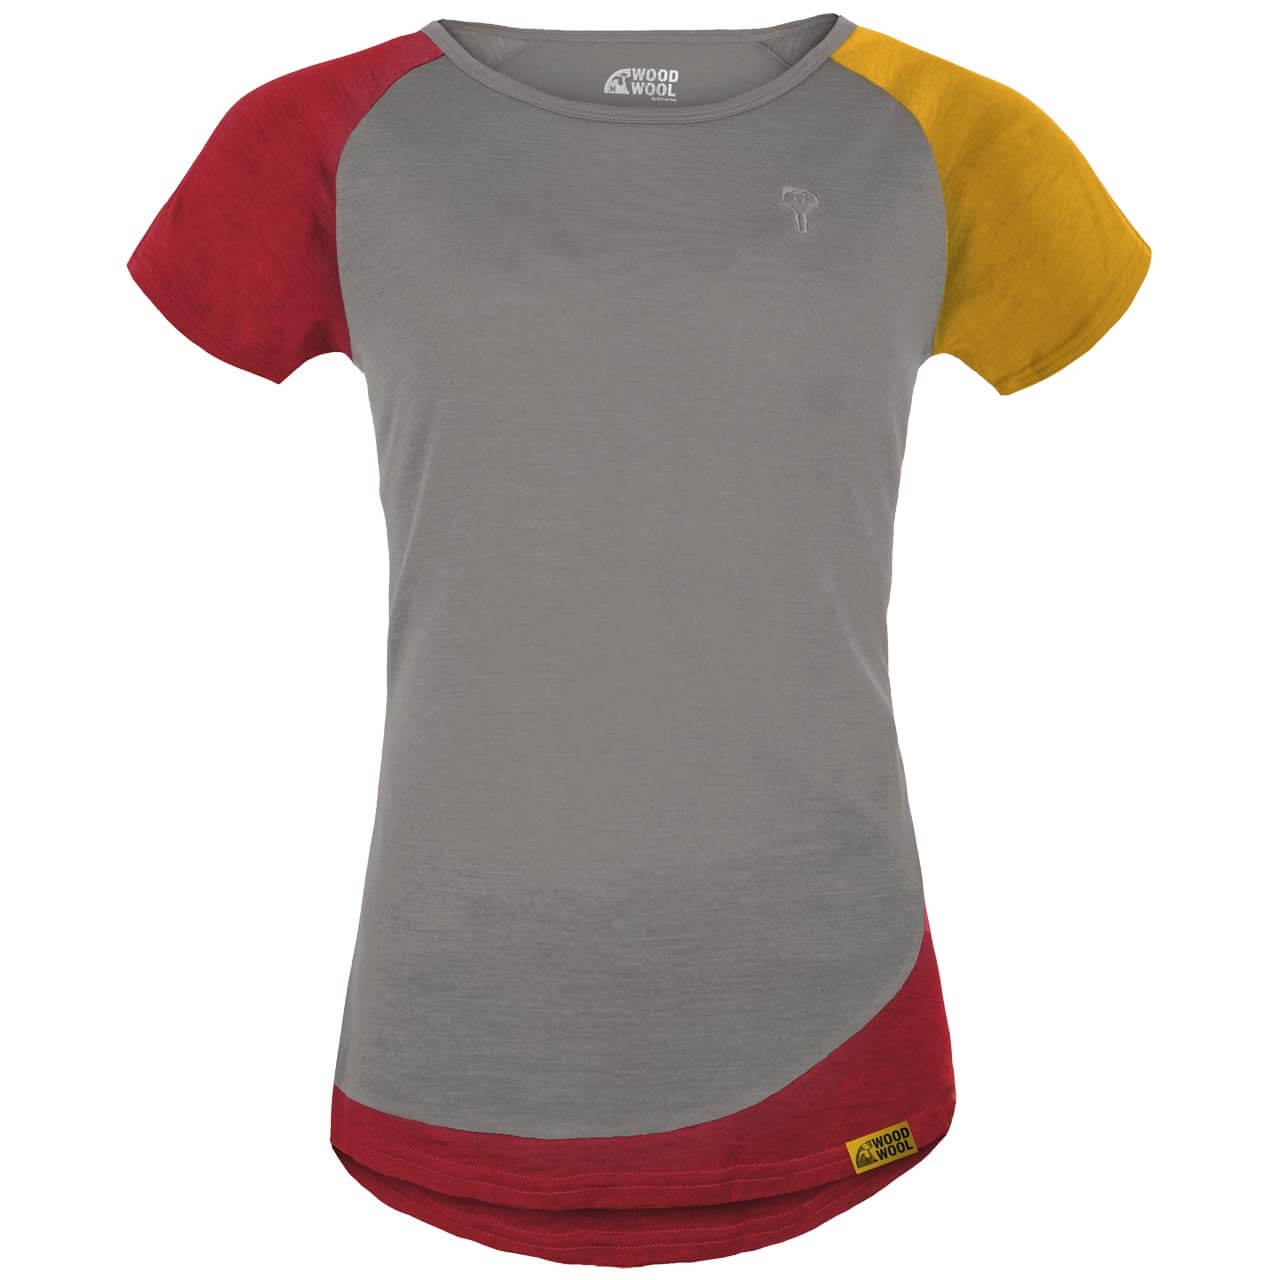 Grüezi Bag WoodWool Janeway T-Shirt - Slate Grey, XS von Grüezi Bag}